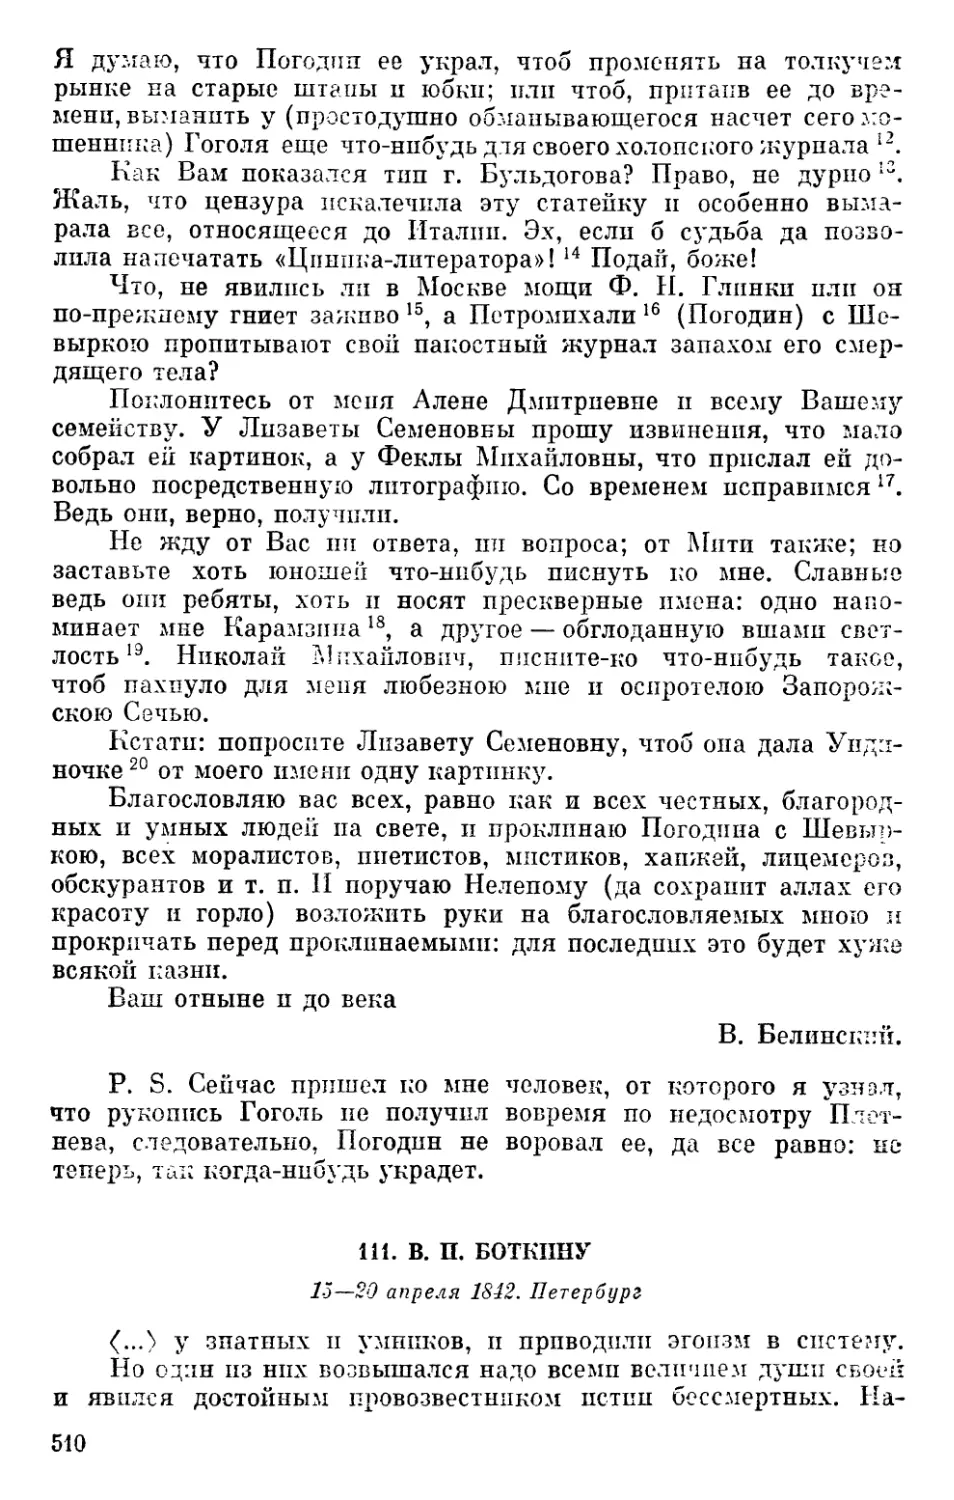 111. В. П. Боткину. 15—20 апреля 1842